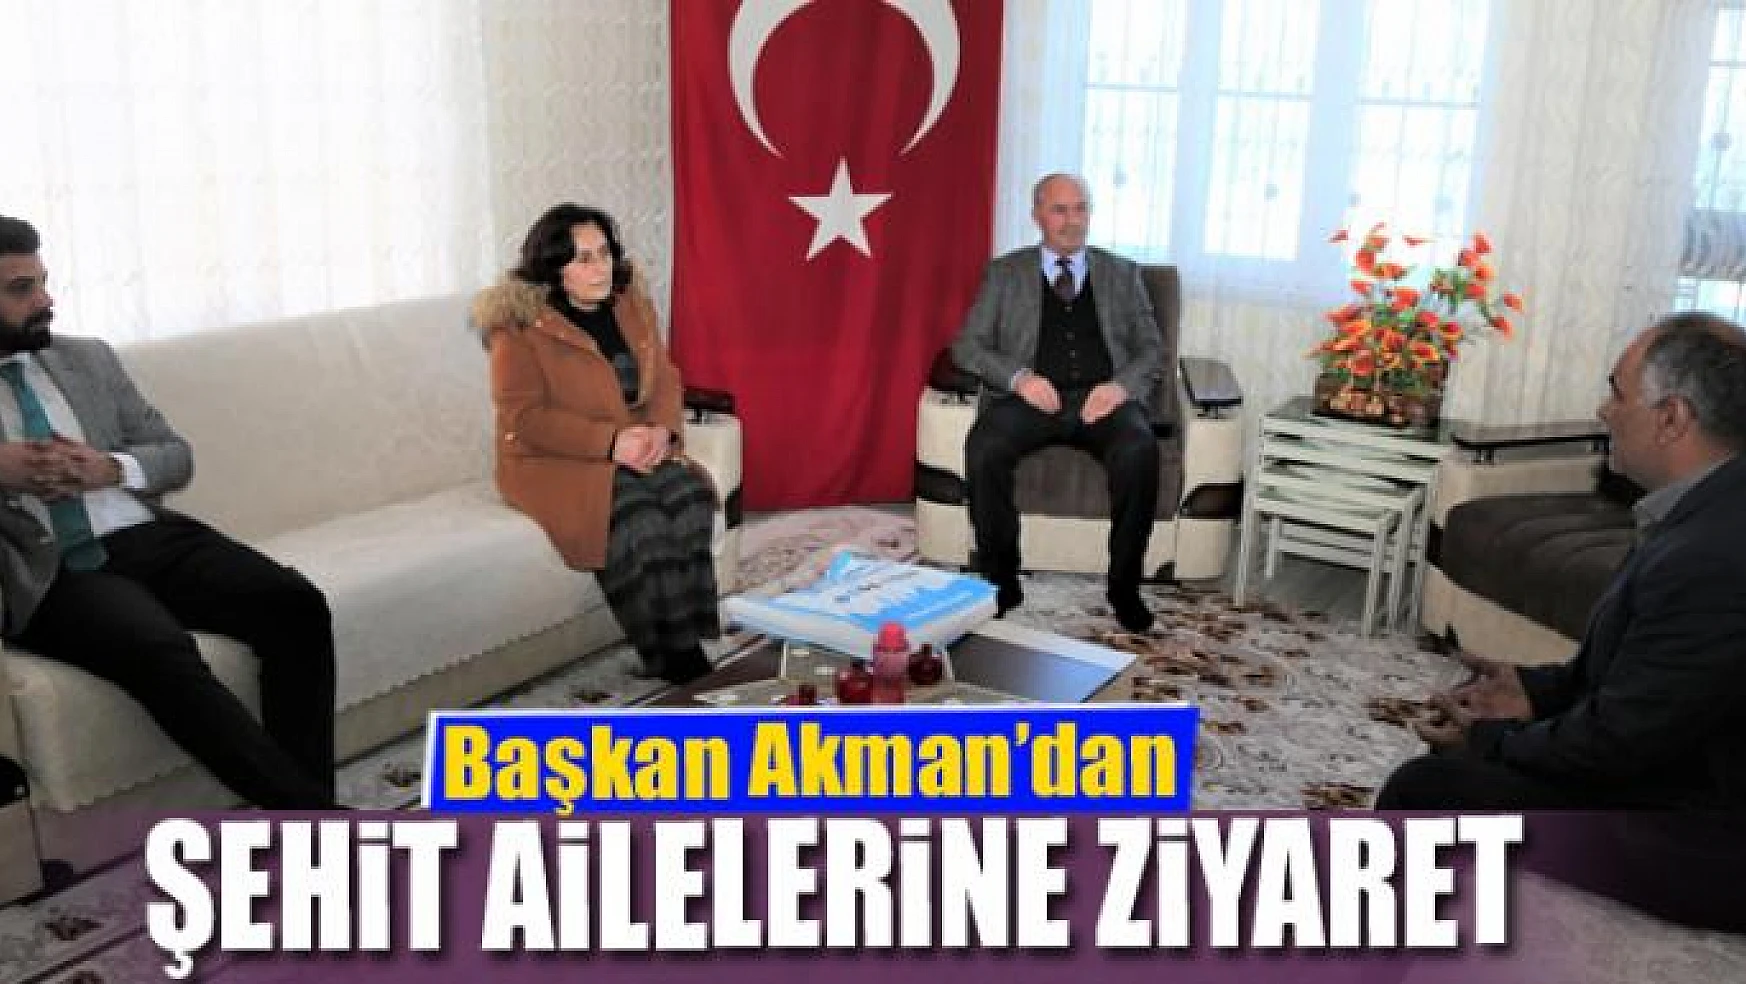 Başkan Akman'dan şehit ailelerine ziyaret